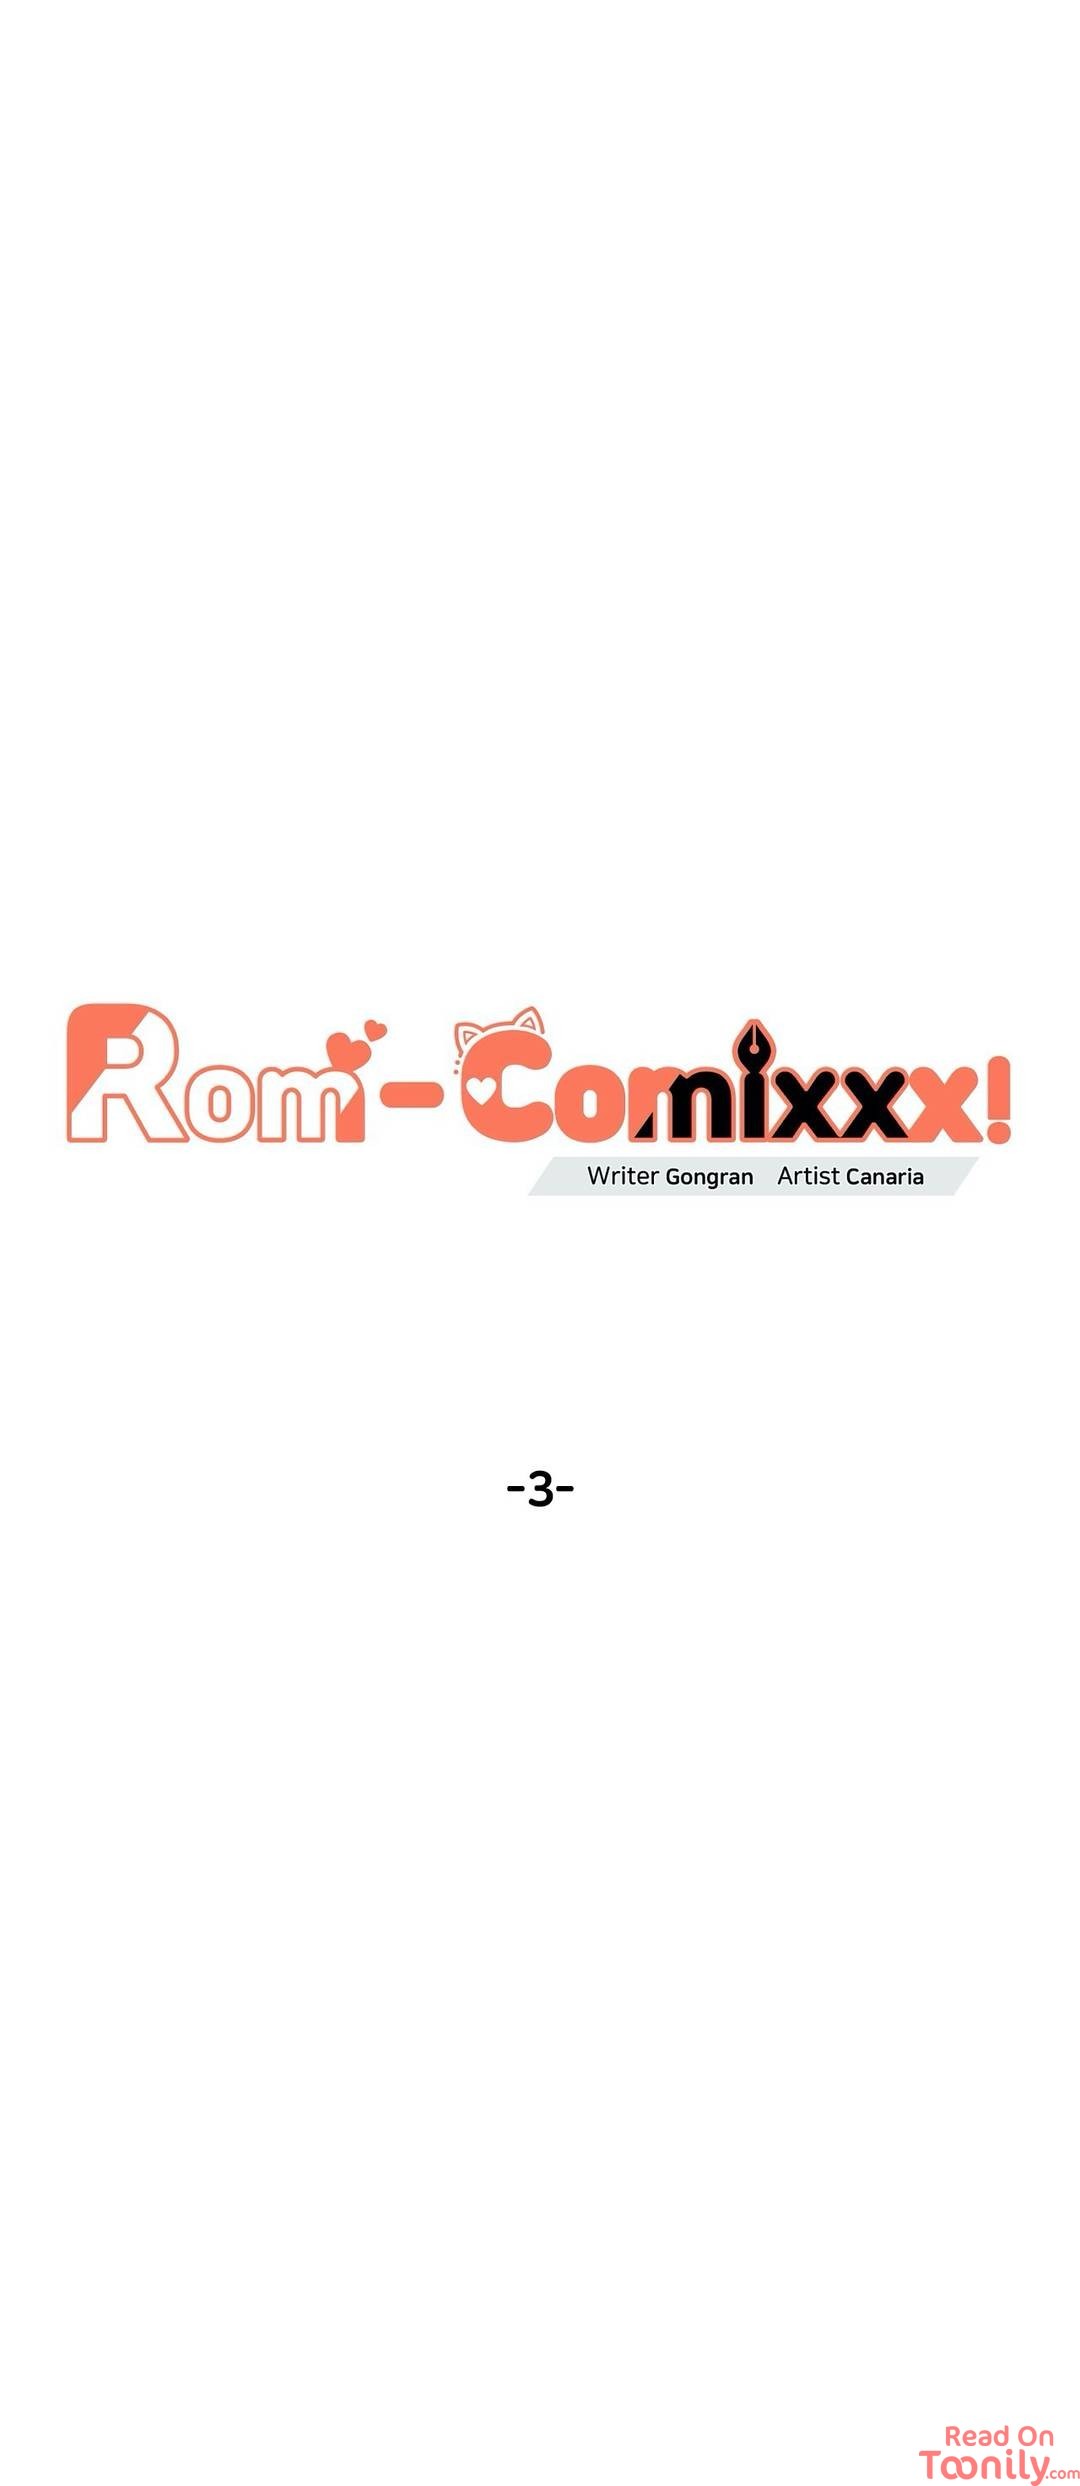 Rom-comixxx! image